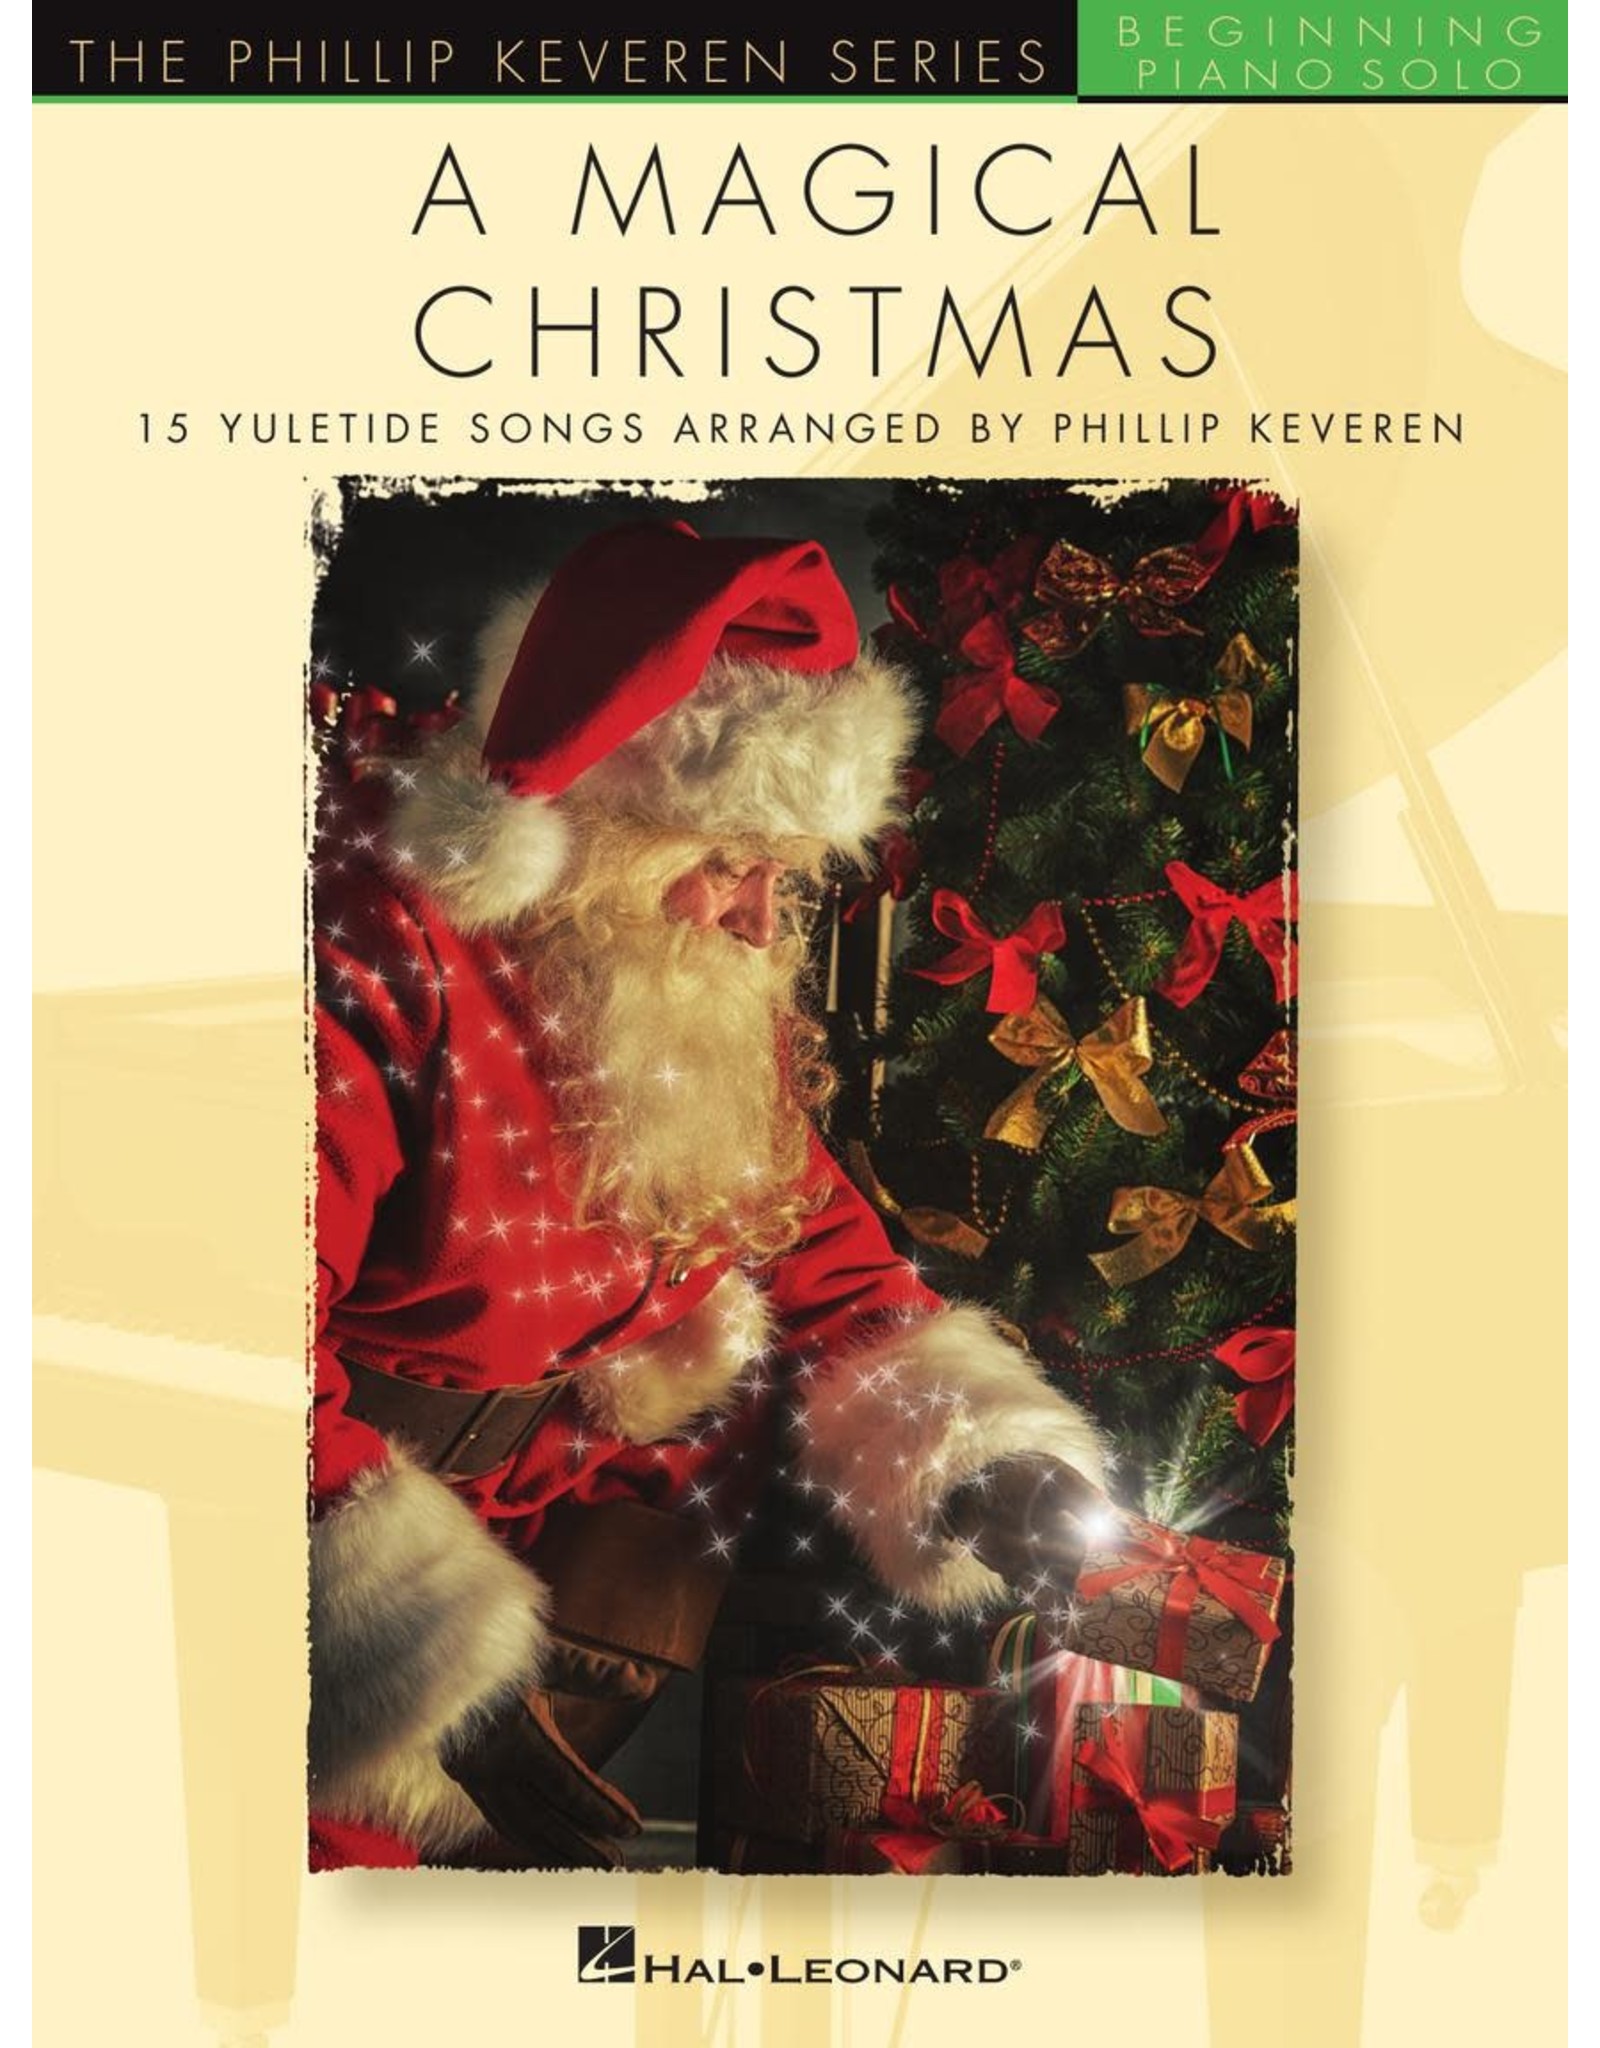 Hal Leonard Magical Christmas - 15 Yuletide Songs for Beginning Piano Solo (5-Finger) arr. Phillip Keveren